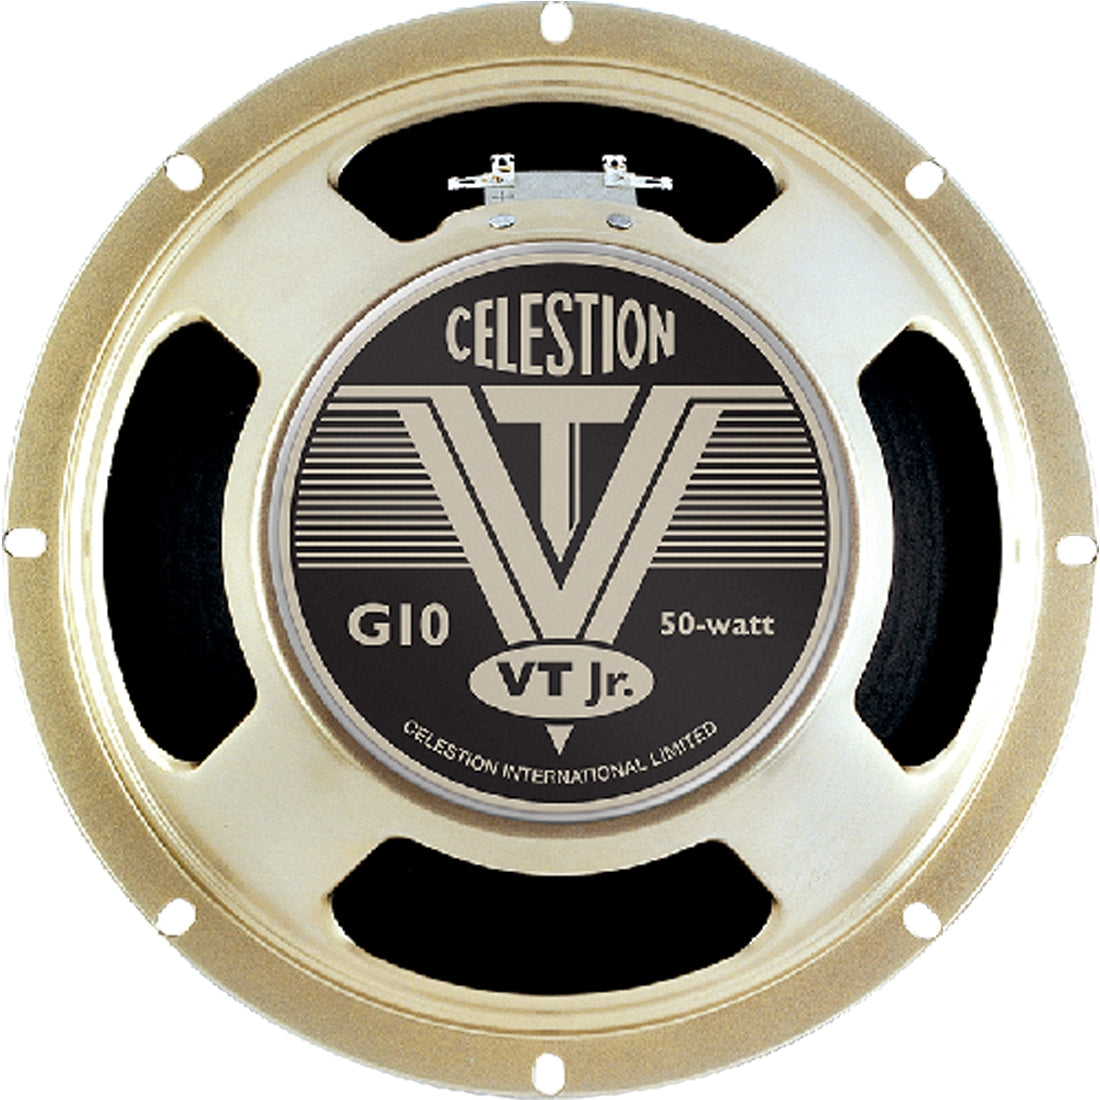 Celestion T5991 VT Junior Guitar Speaker 10 Inch 50w 16ohm